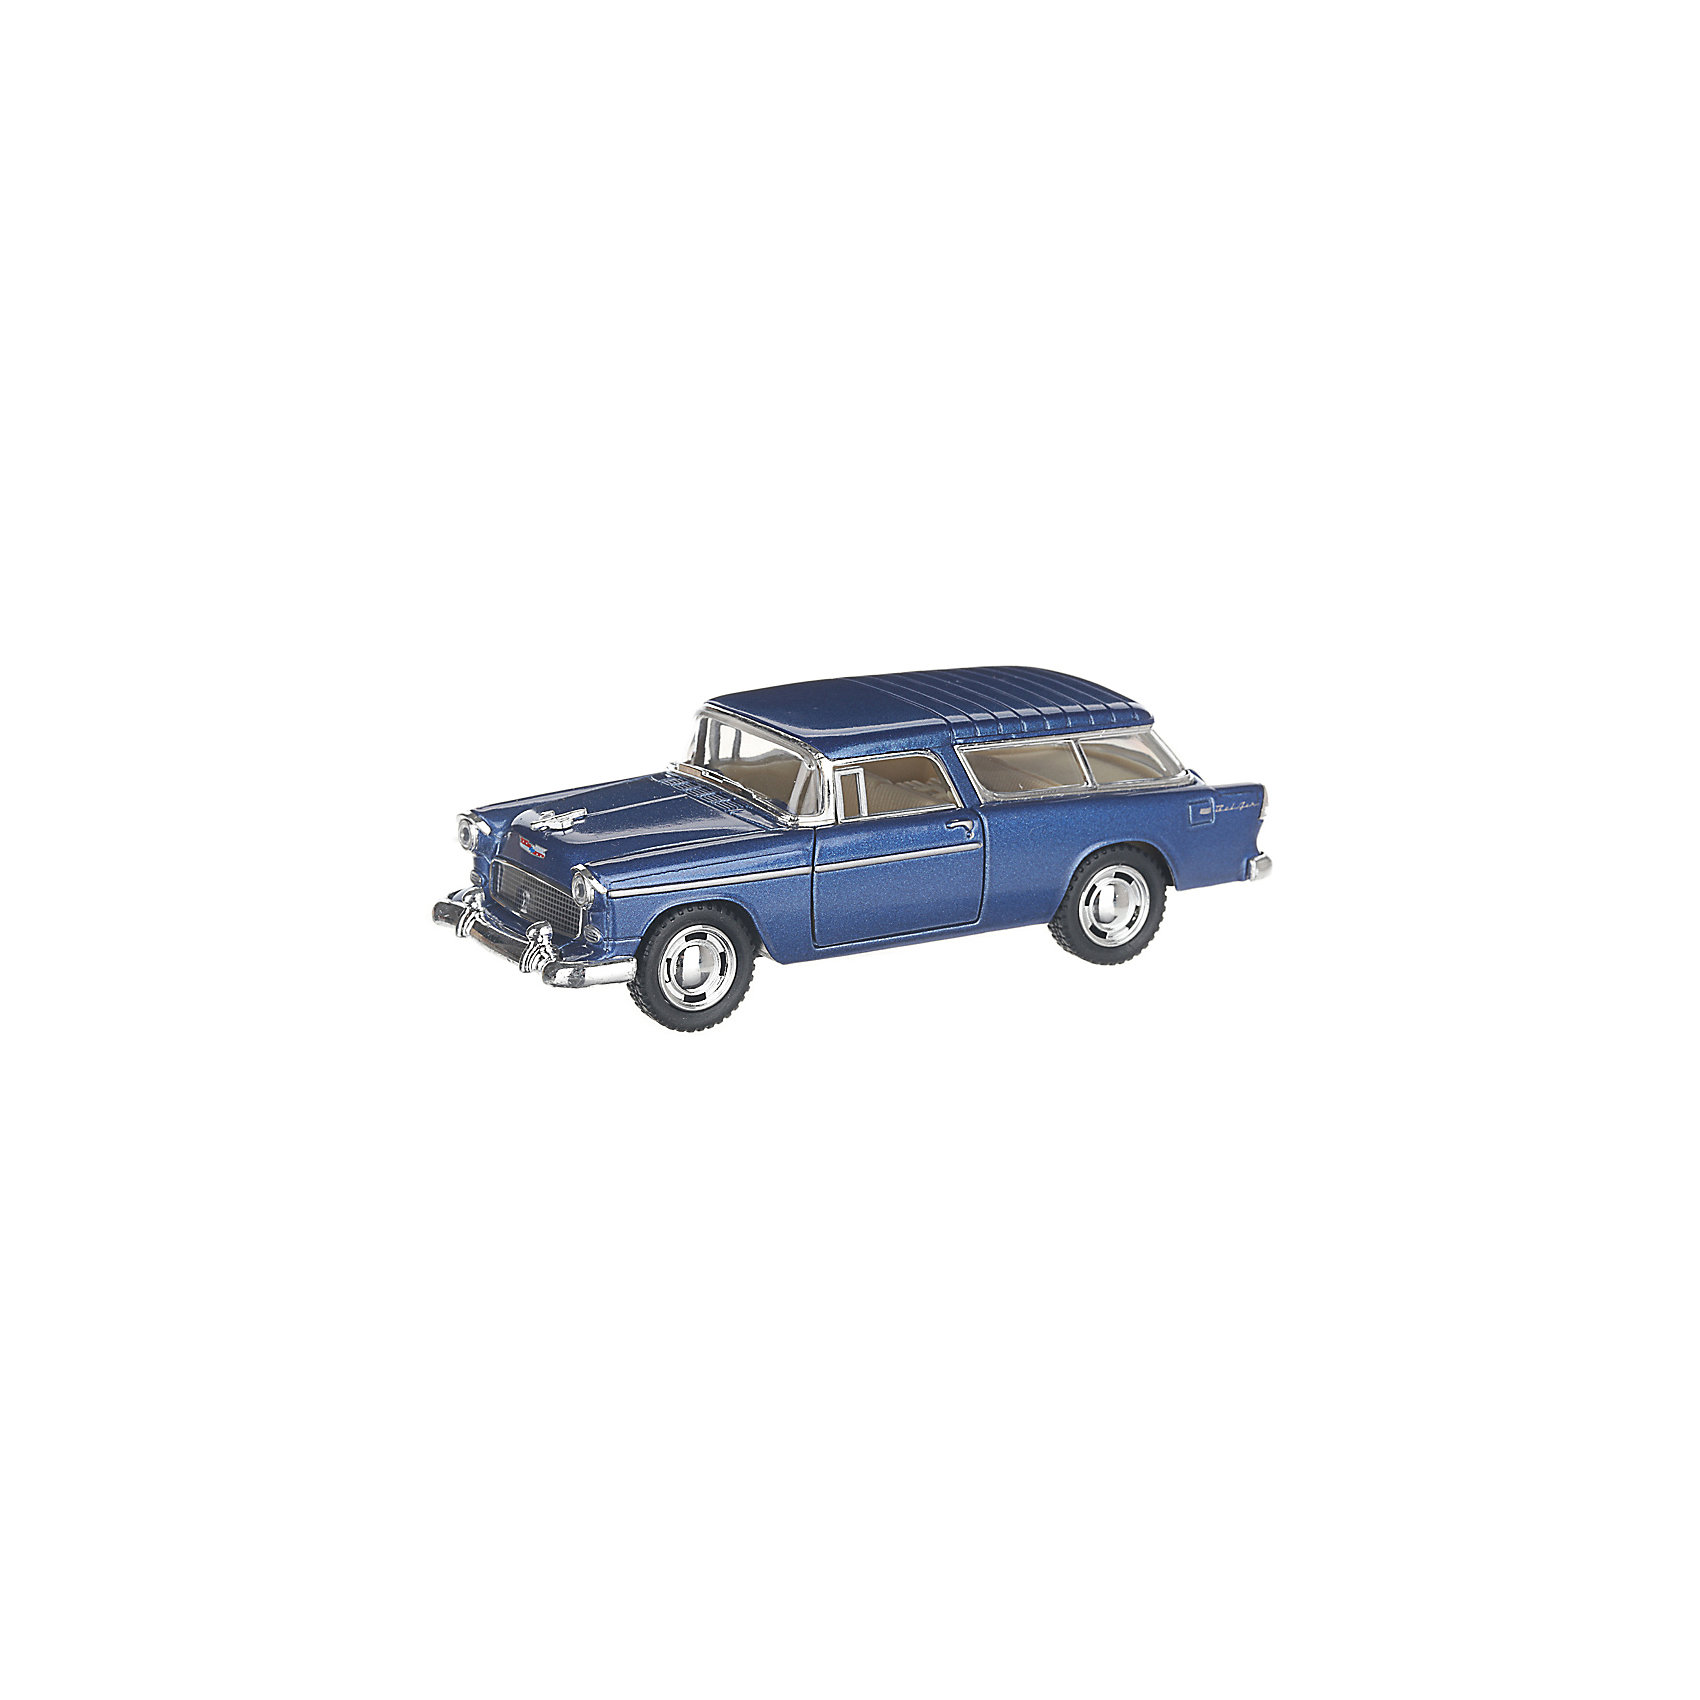 Коллекционная машинка Chevrolet Nomad hardtop, синяя Serinity Toys 13232957